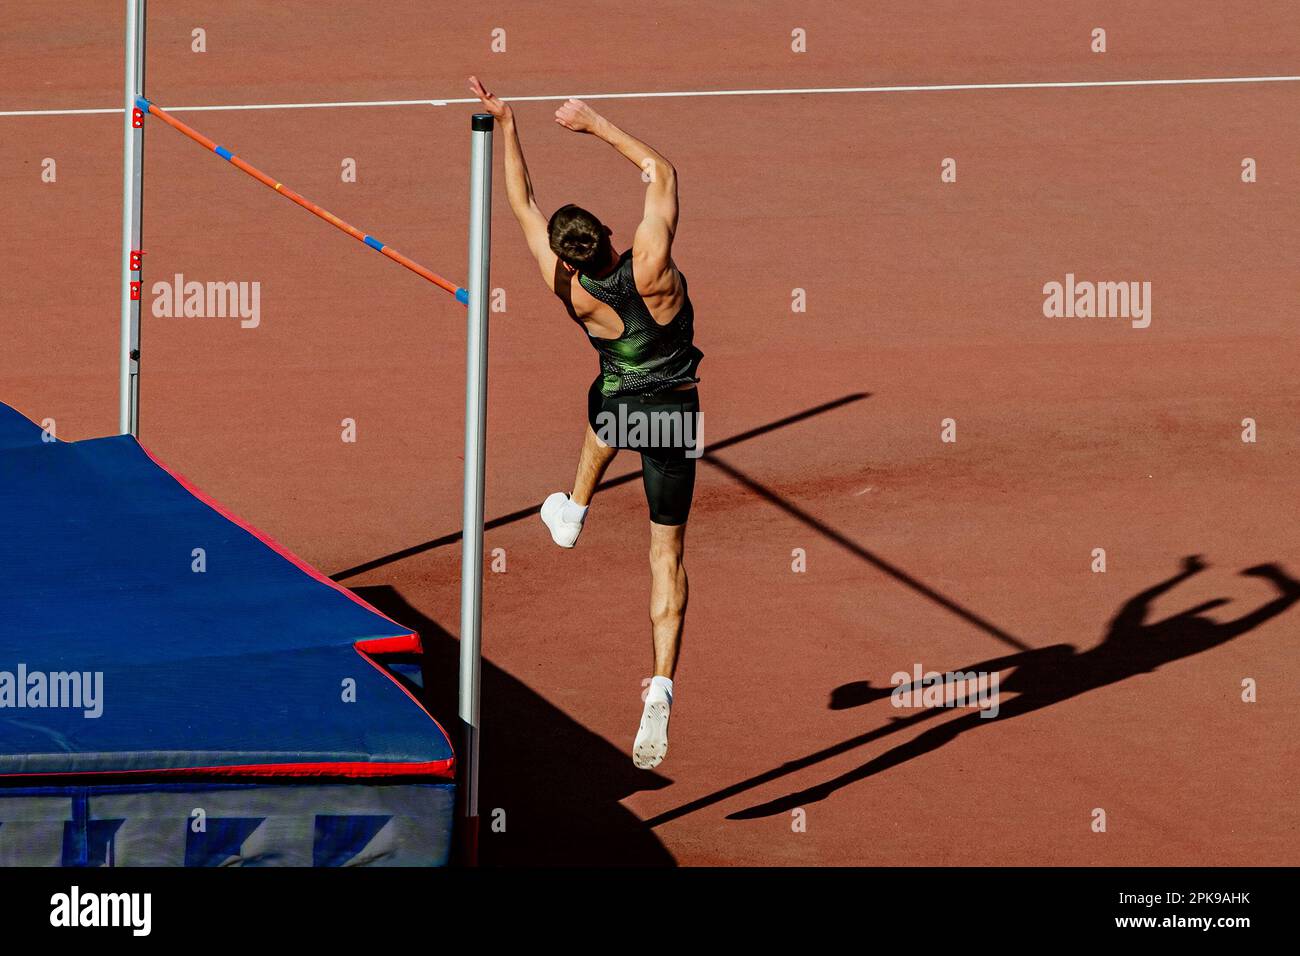 atleta maschile salto alto nei campionati estivi di atletica, jumper ombra su pista rossa stadio Foto Stock